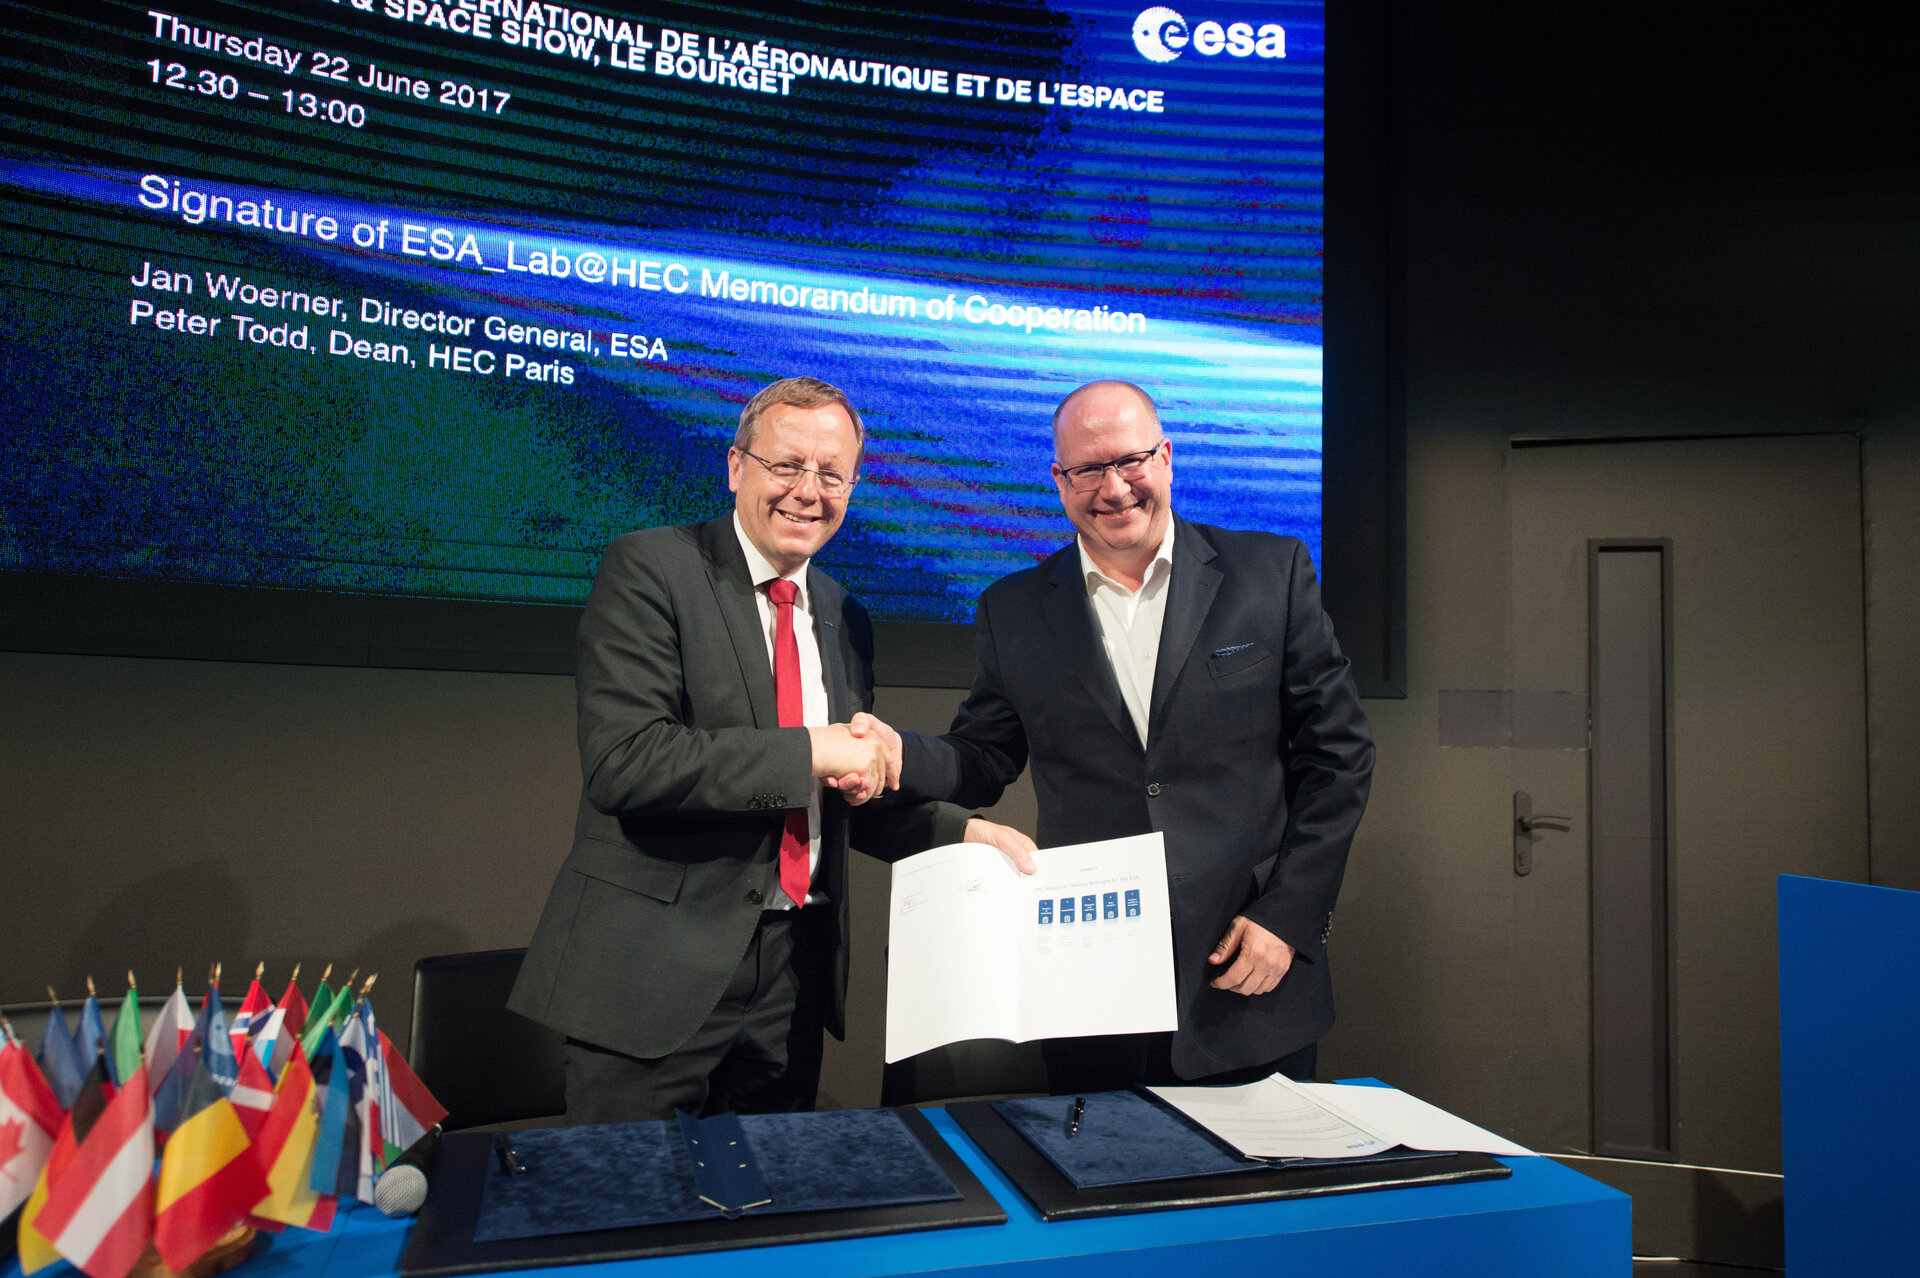 Signature de l'accord pour la création de ESA Lab@HEC Paris